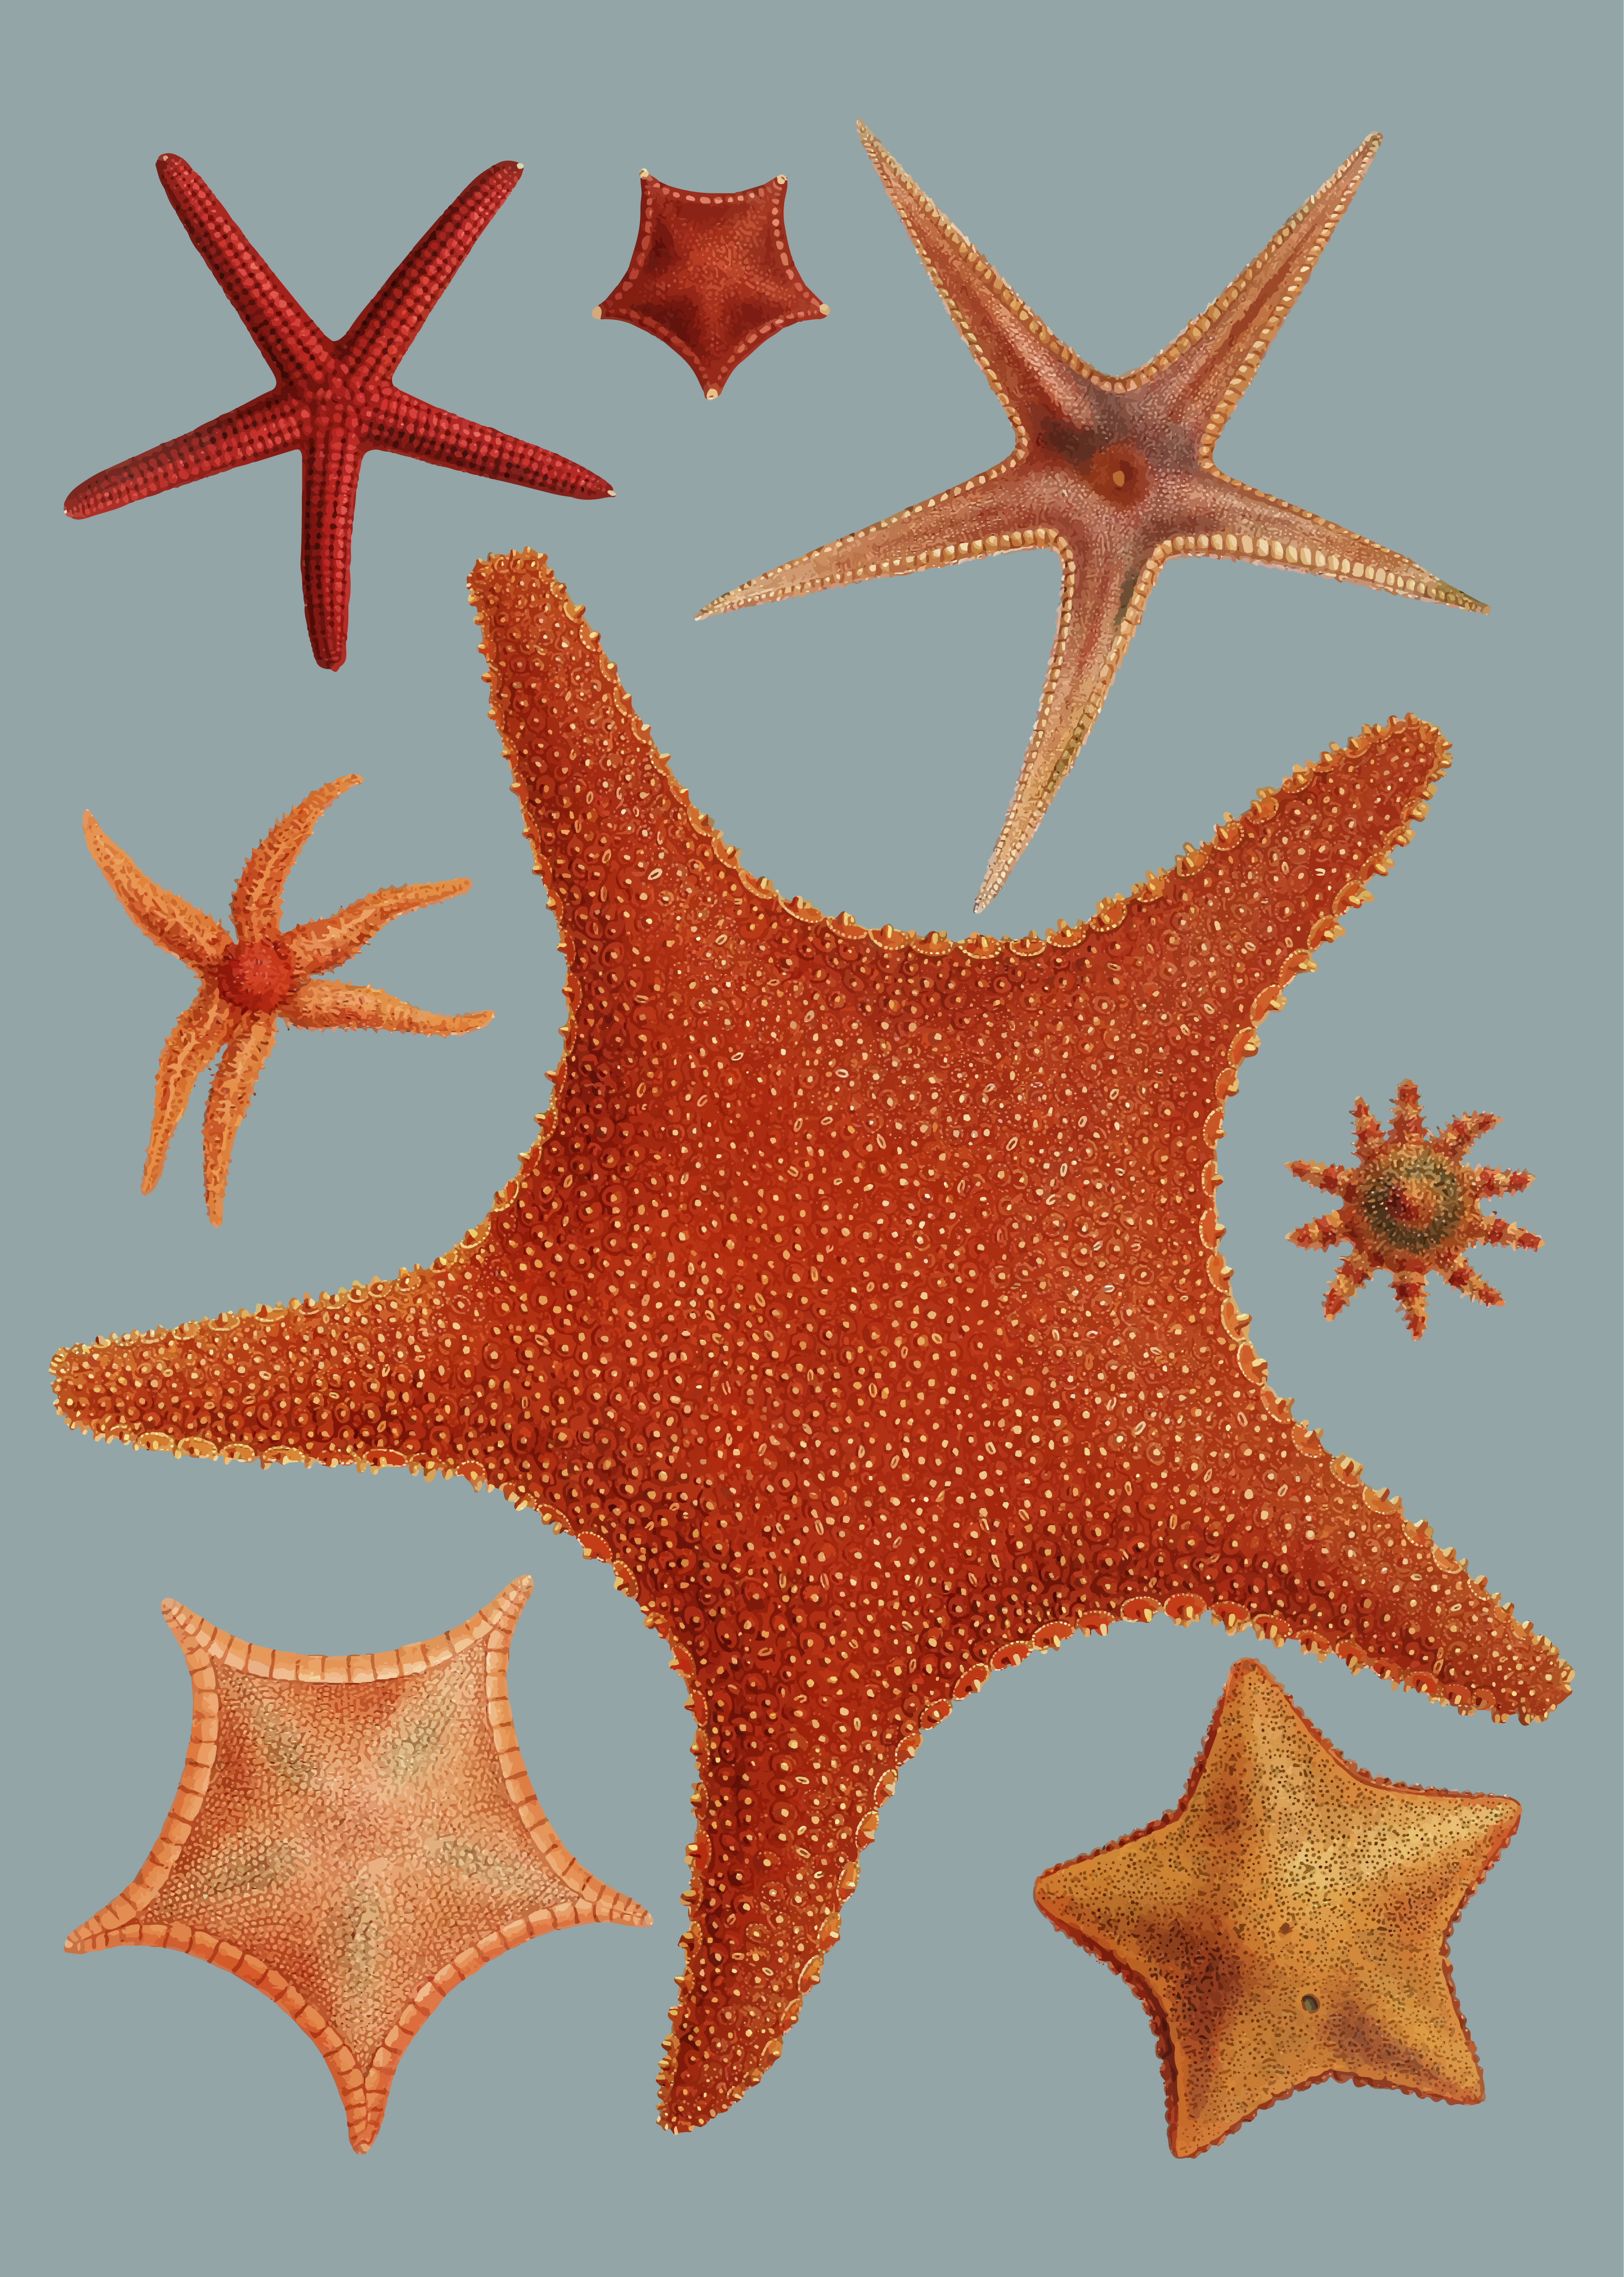 Download Starfish varieties - Download Free Vectors, Clipart ...